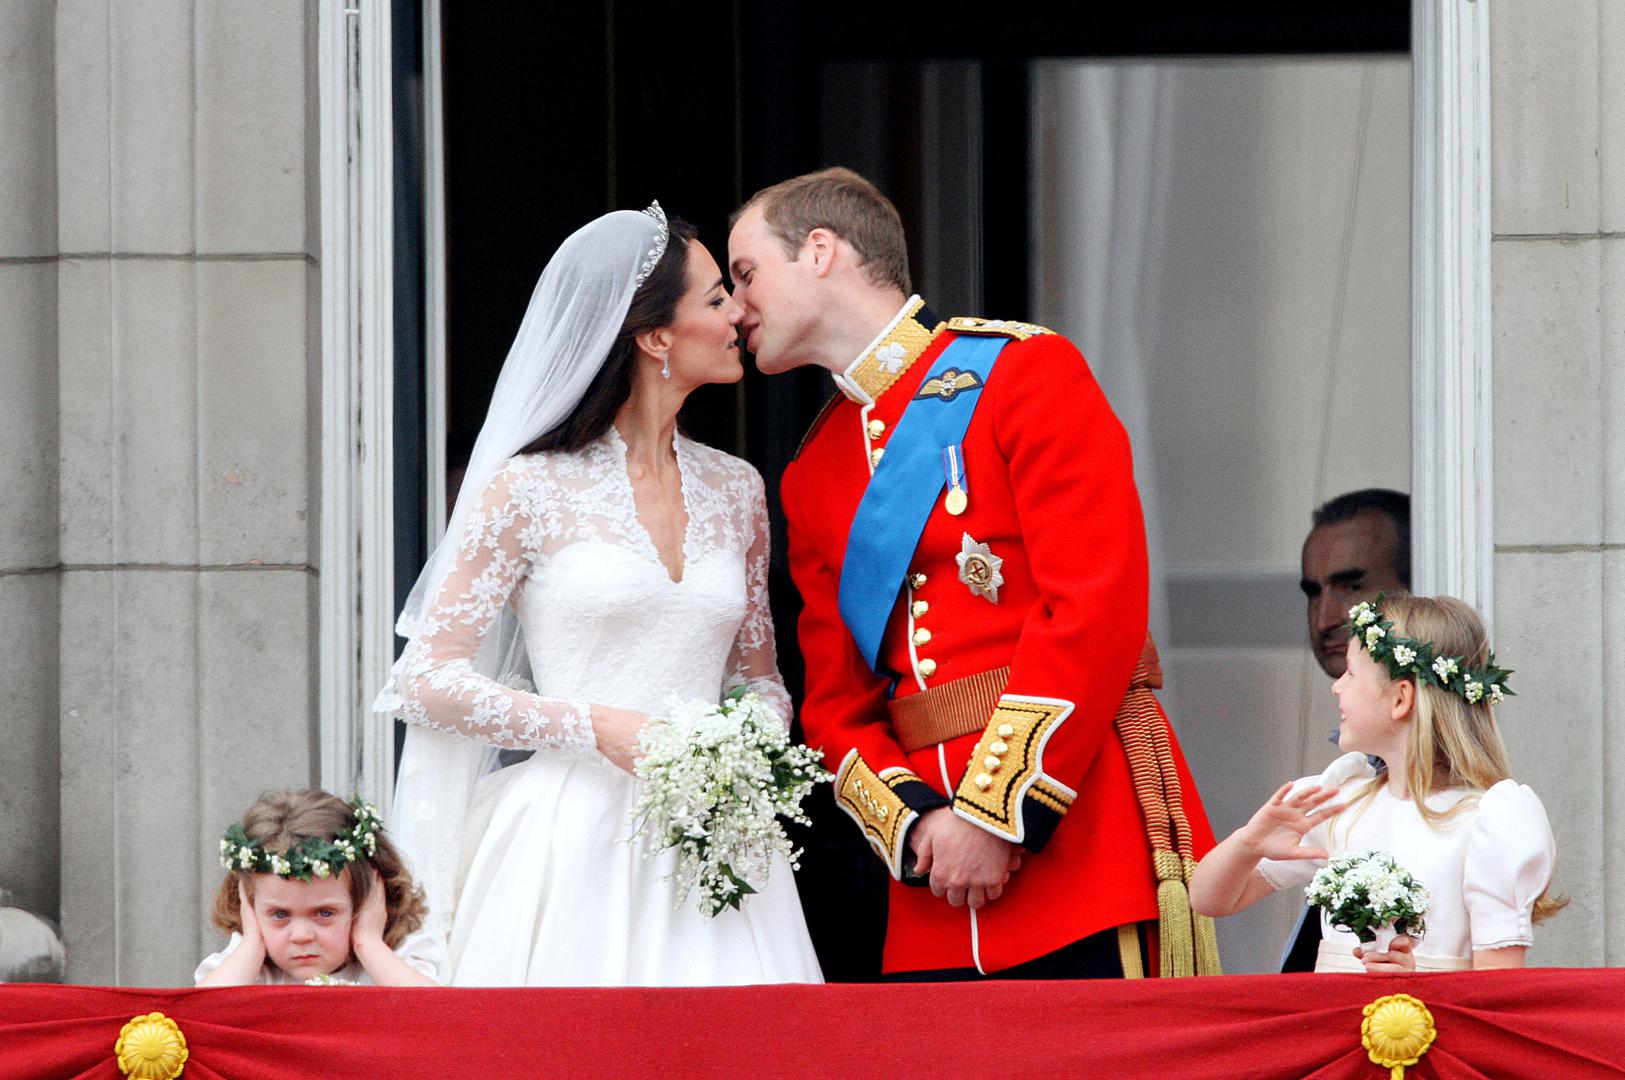 Zaručili su se u listopadu 2010. godine, u Keniji, a vjenčali su se u raskošnoj ceremoniji 29. travnja 2011. u Westminsterskoj palači, dan koji je bio proglašen i nacionalnim praznikom. 

